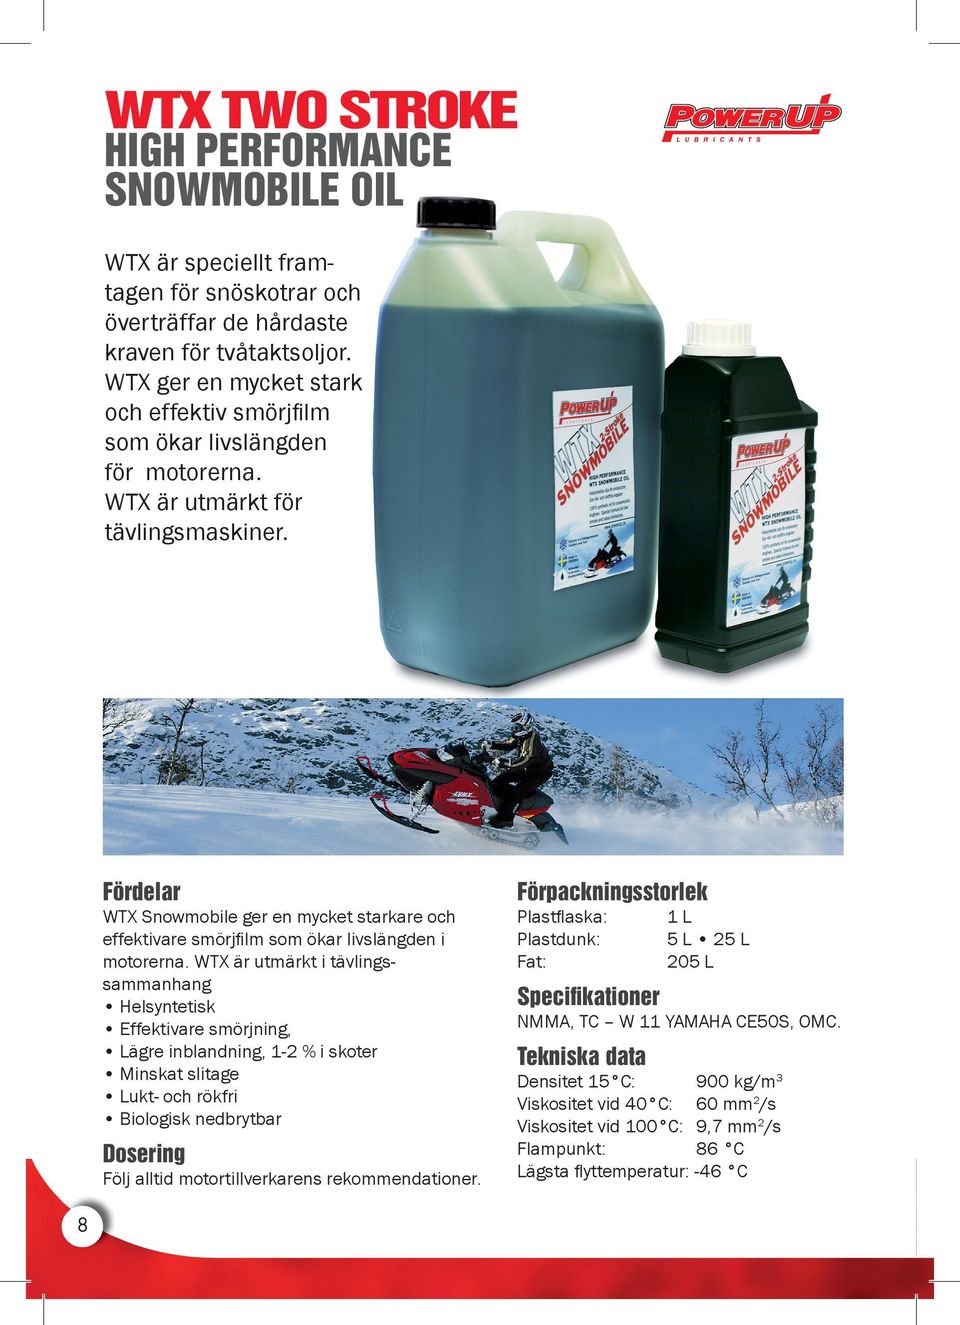 WTX Snowmobile ger en mycket starkare och effektivare smörjfilm som ökar livslängden i motorerna.